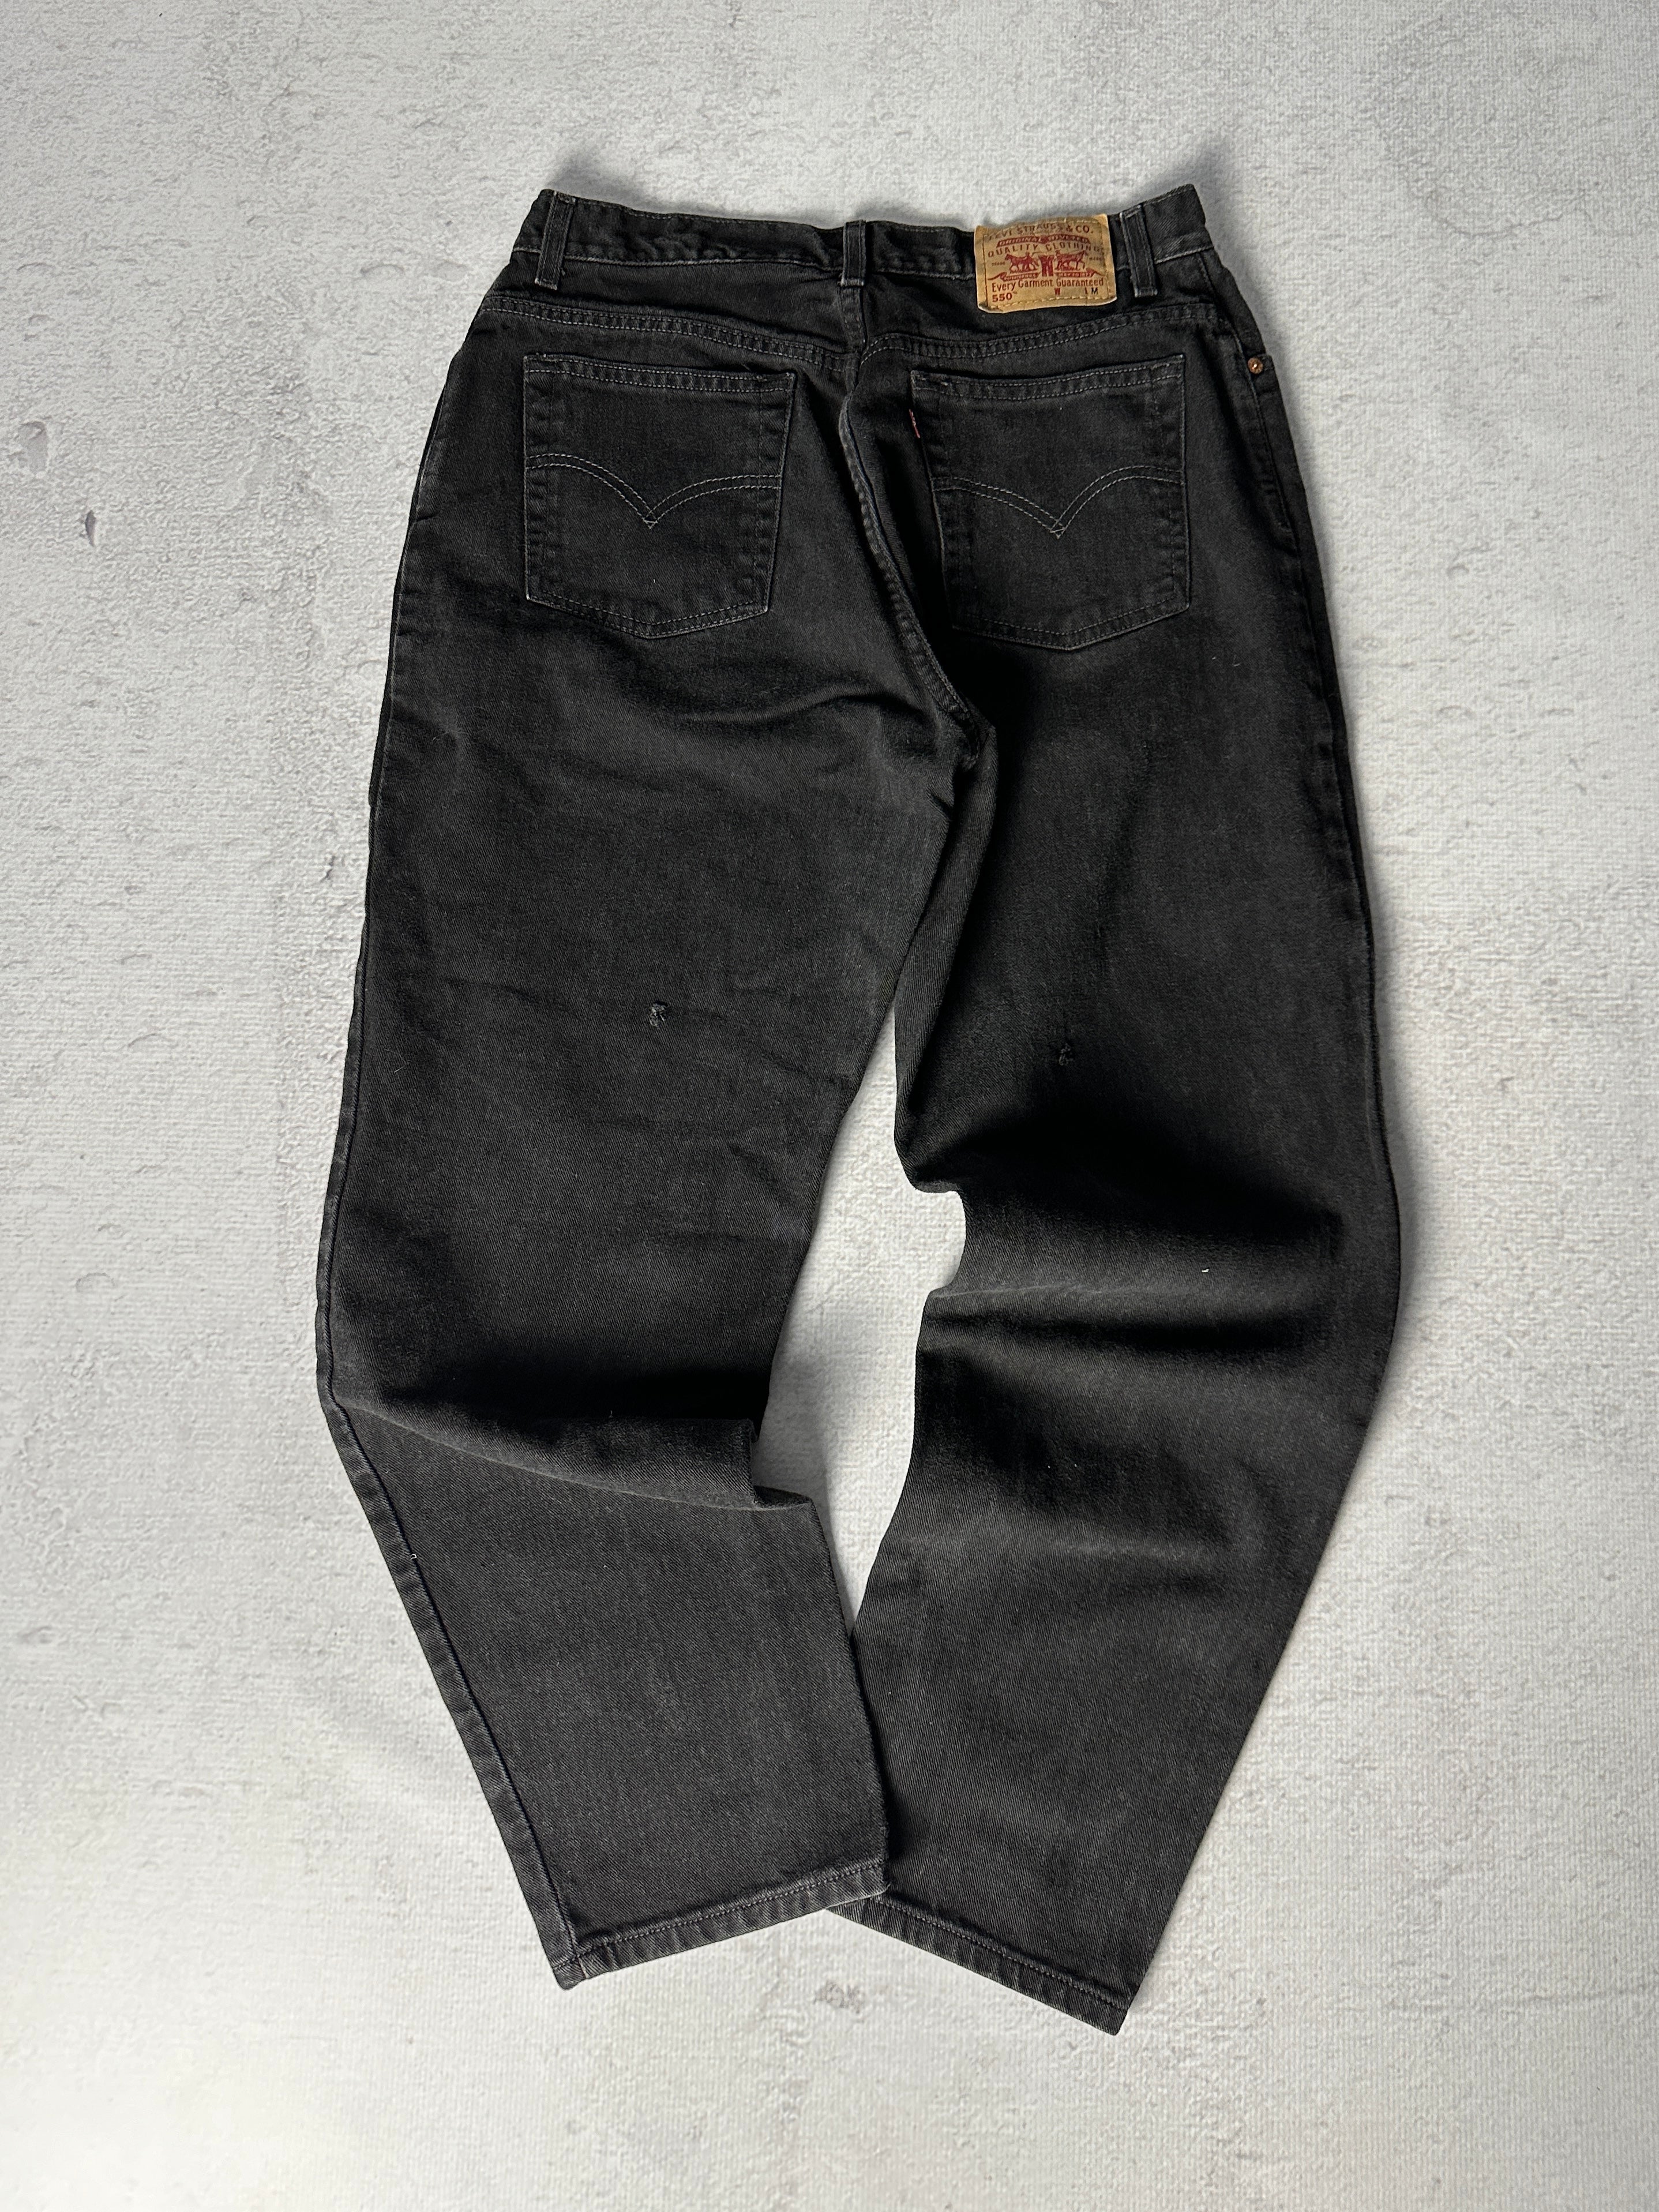 Vintage Levis 550 Jeans - Women's 34W30L